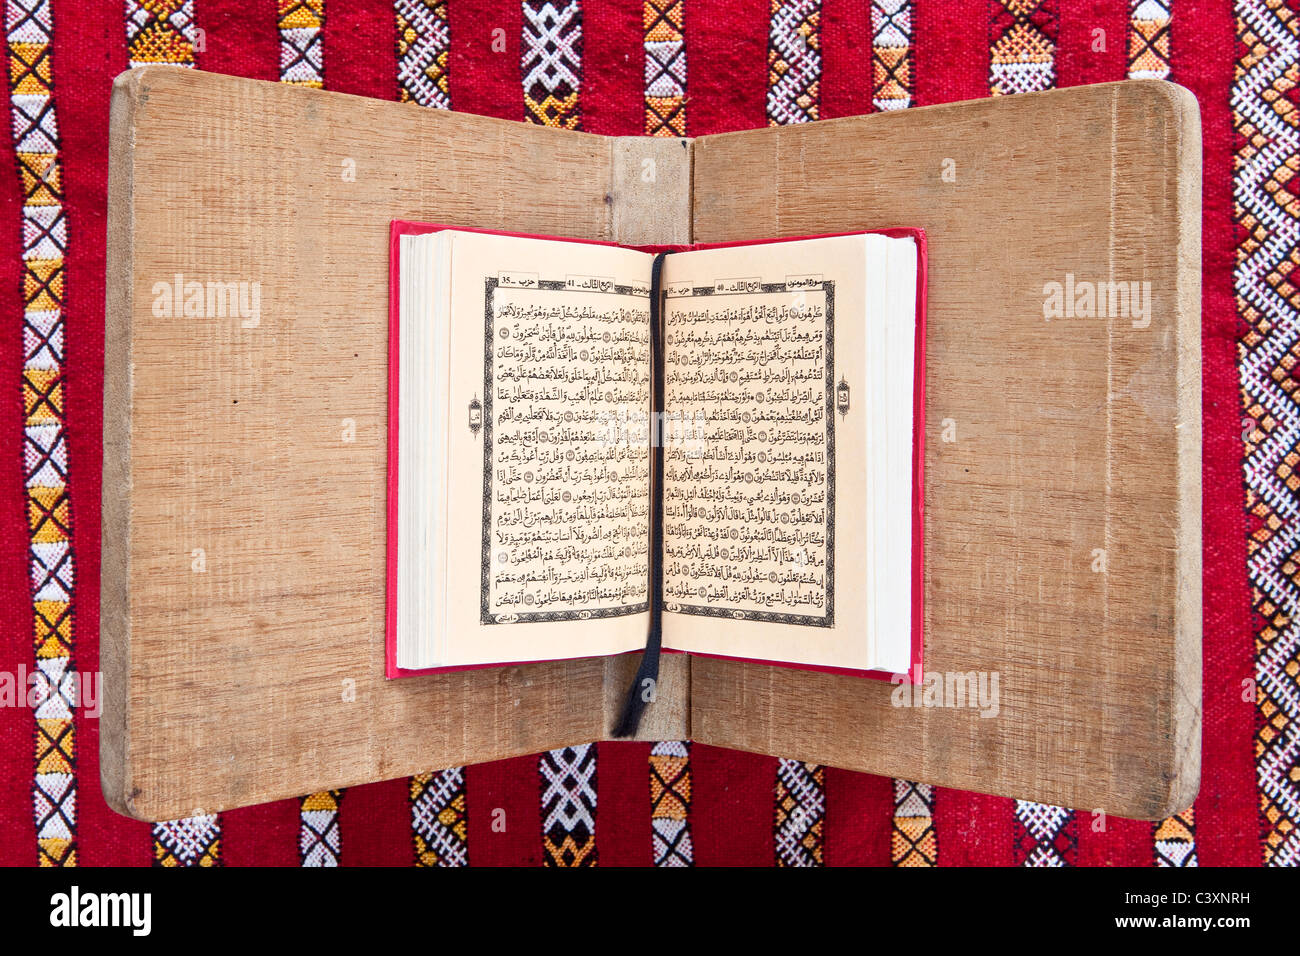 Corano arabo immagini e fotografie stock ad alta risoluzione - Alamy